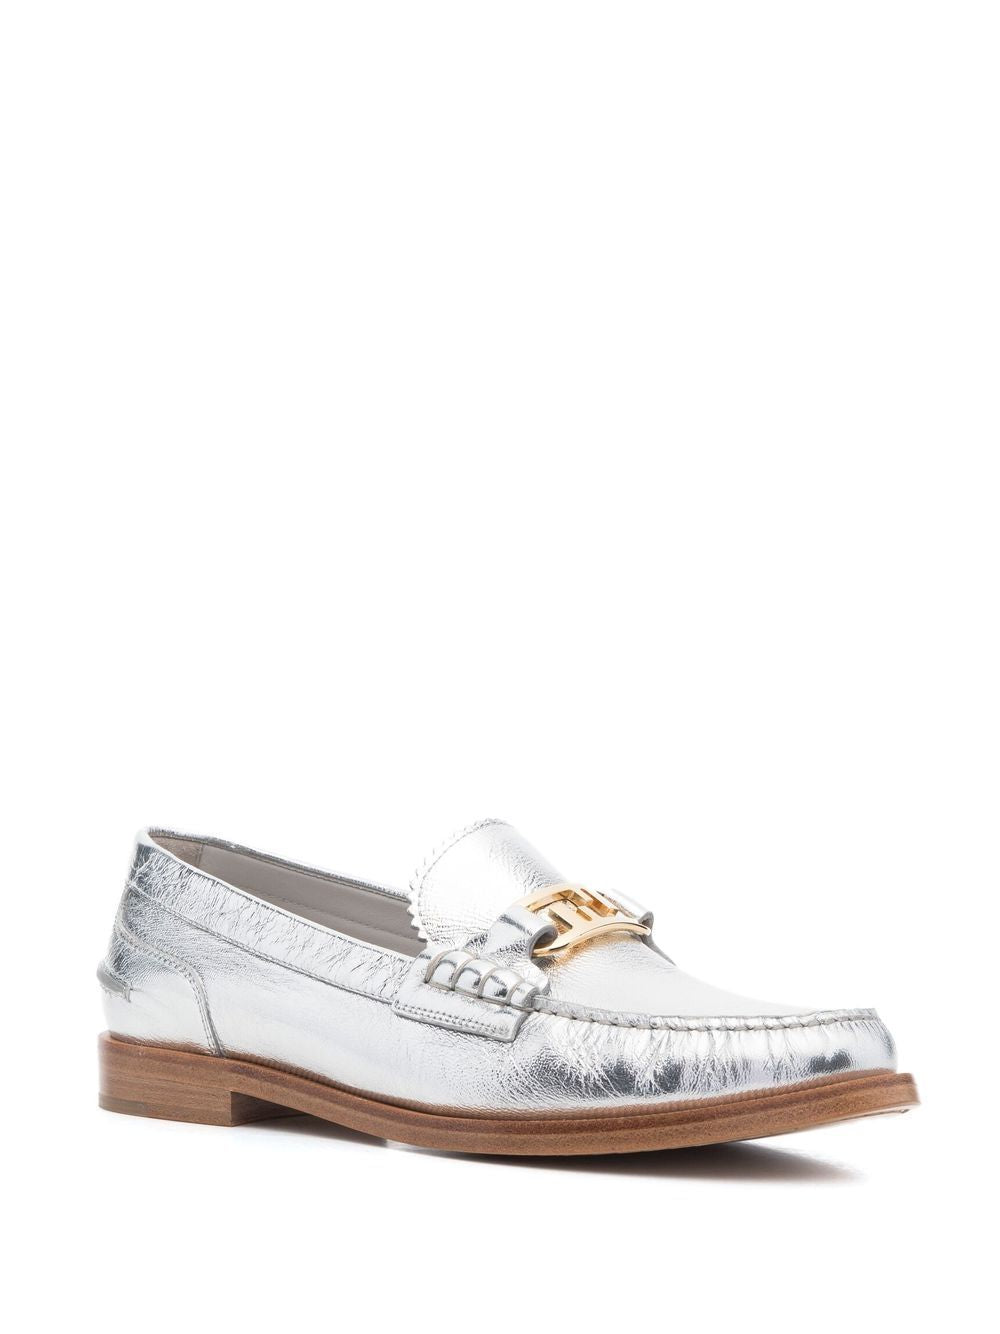 Shop Fendi Silver Metallic Slip On Loafers For Women